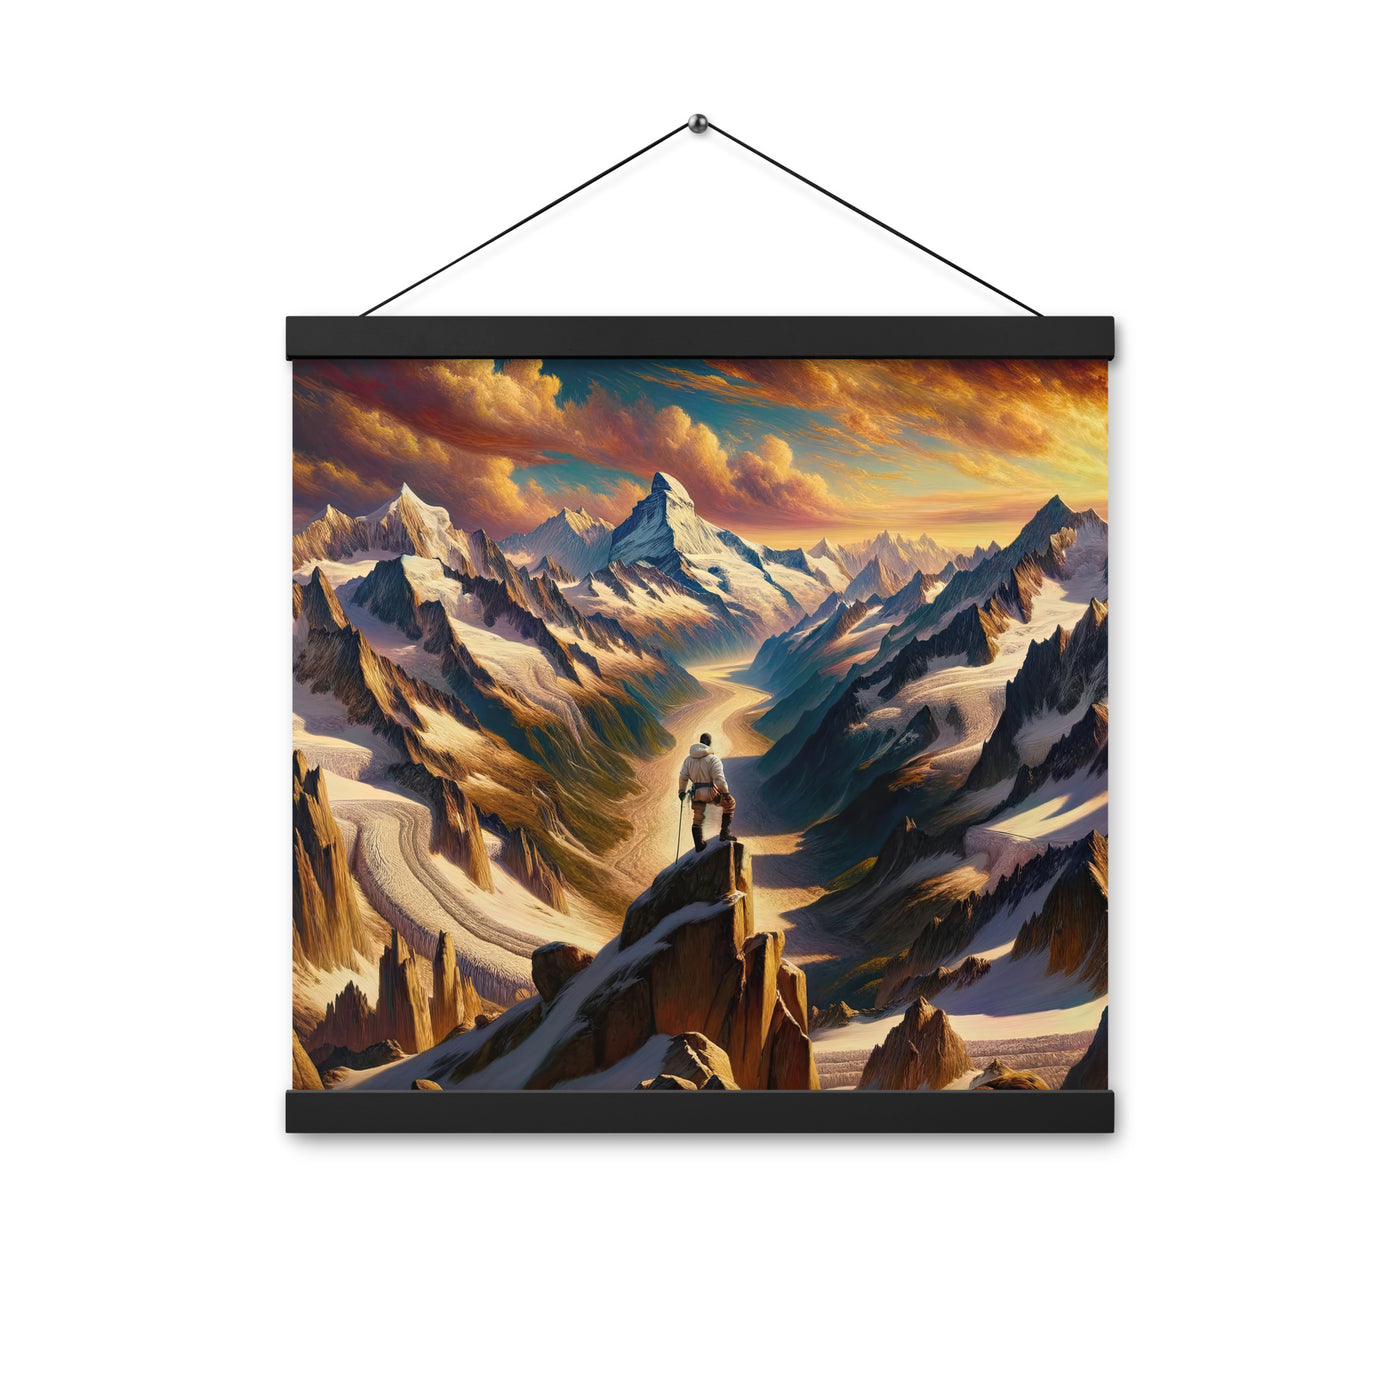 Ölgemälde eines Wanderers auf einem Hügel mit Panoramablick auf schneebedeckte Alpen und goldenen Himmel - Enhanced Matte Paper Poster wandern xxx yyy zzz 40.6 x 40.6 cm